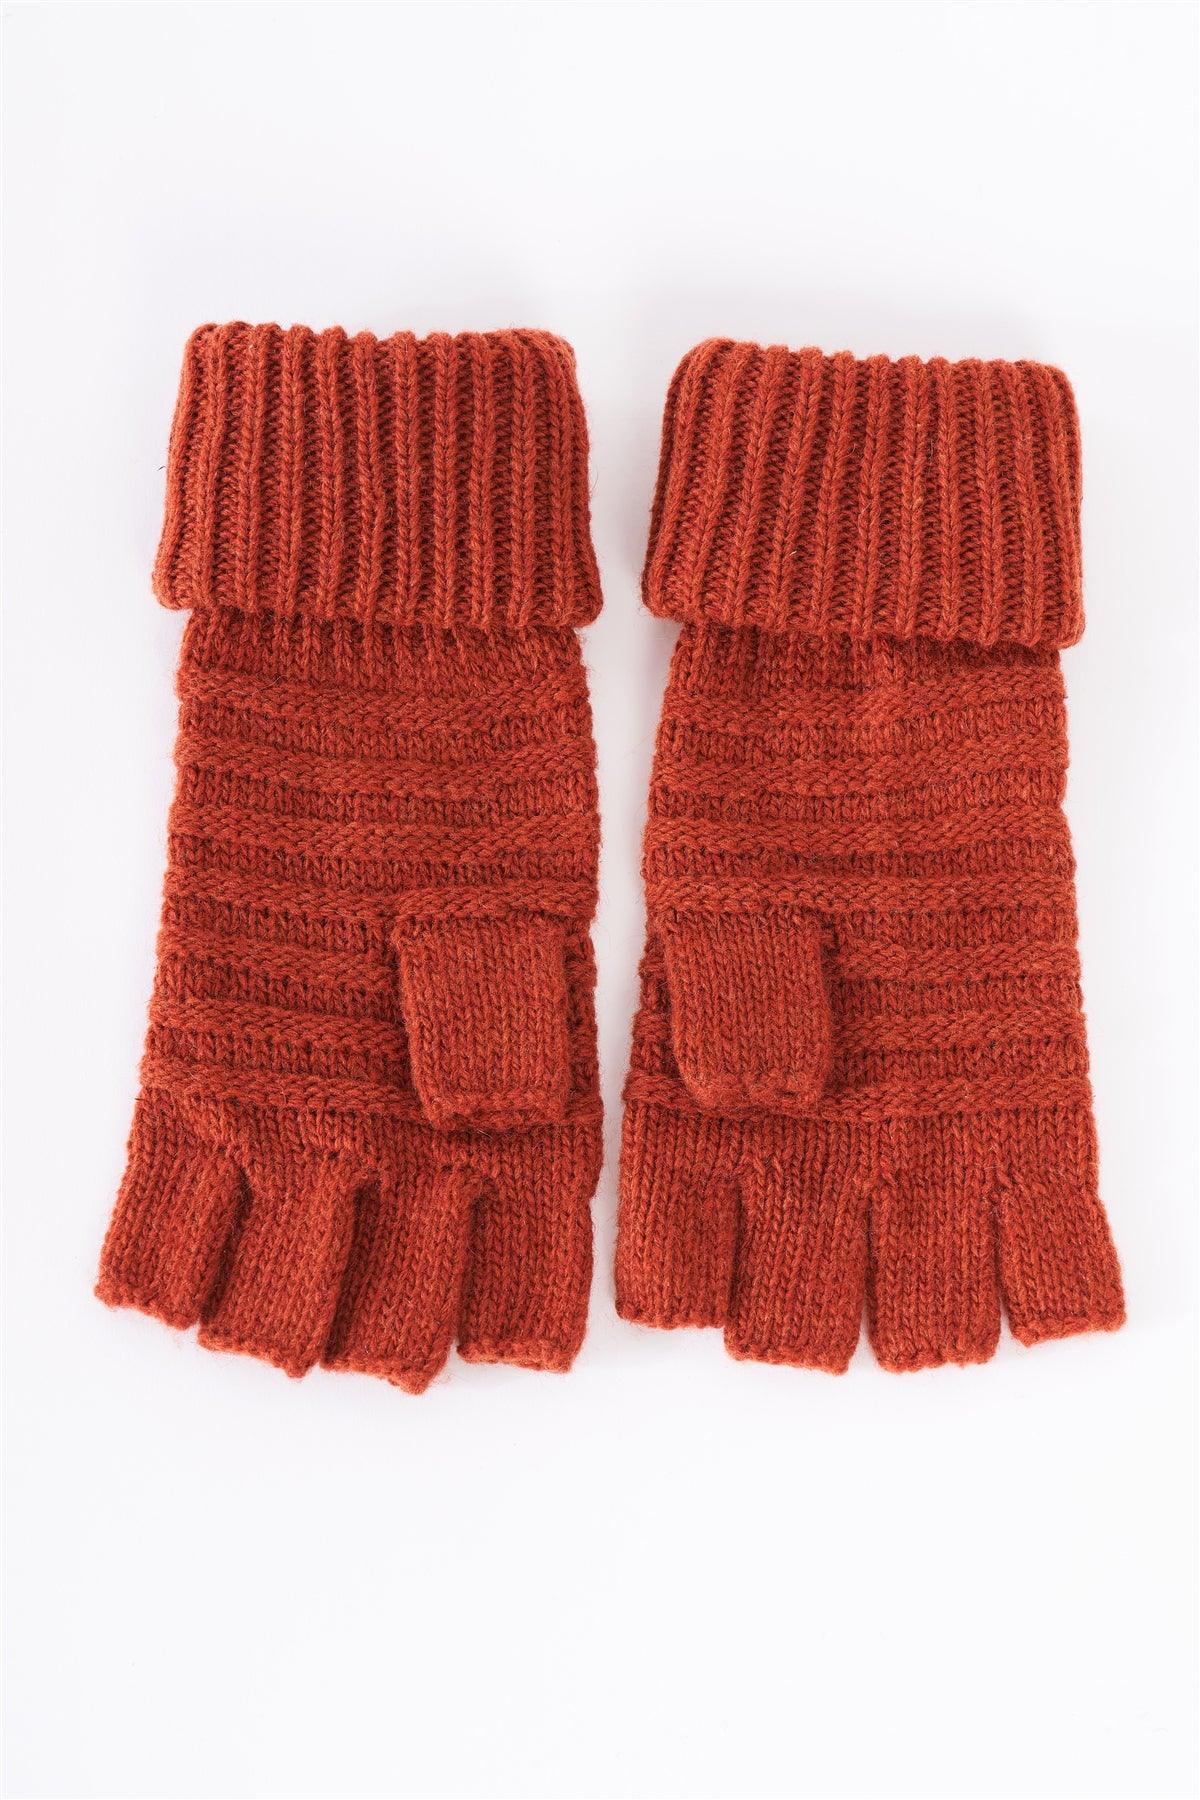 Rust Fingerless Button Detail Knit Winter Gloves /3 Pieces